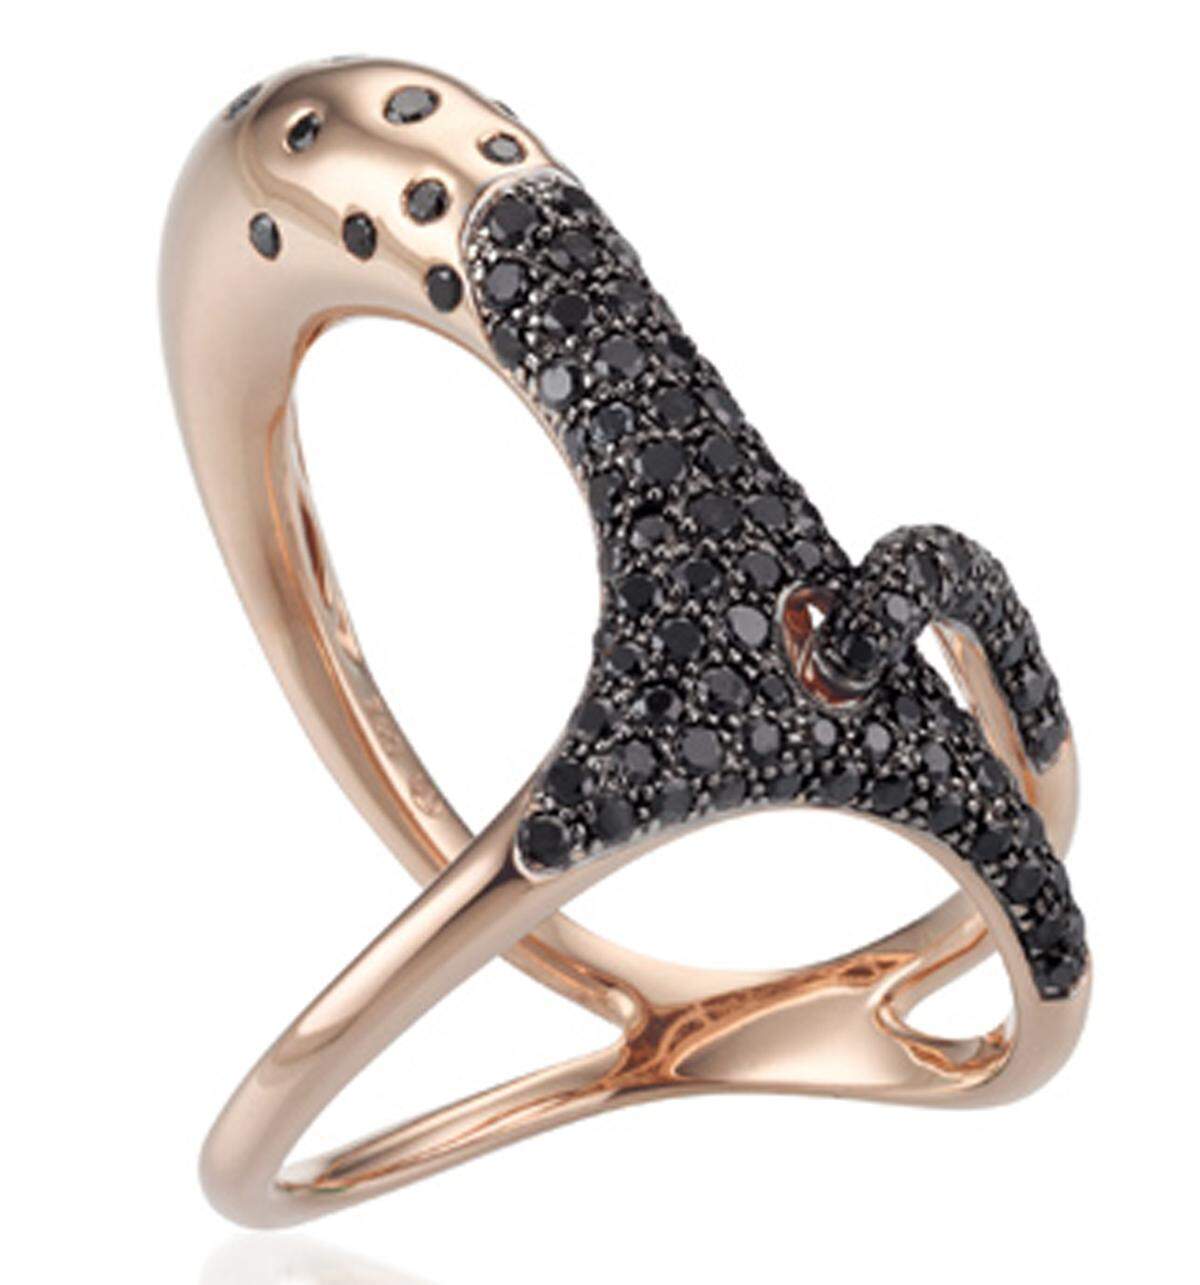 Etwas abstrakt wird der "Black Swan" bei diesem Ring vonOliver Heemeyer dargestellt.